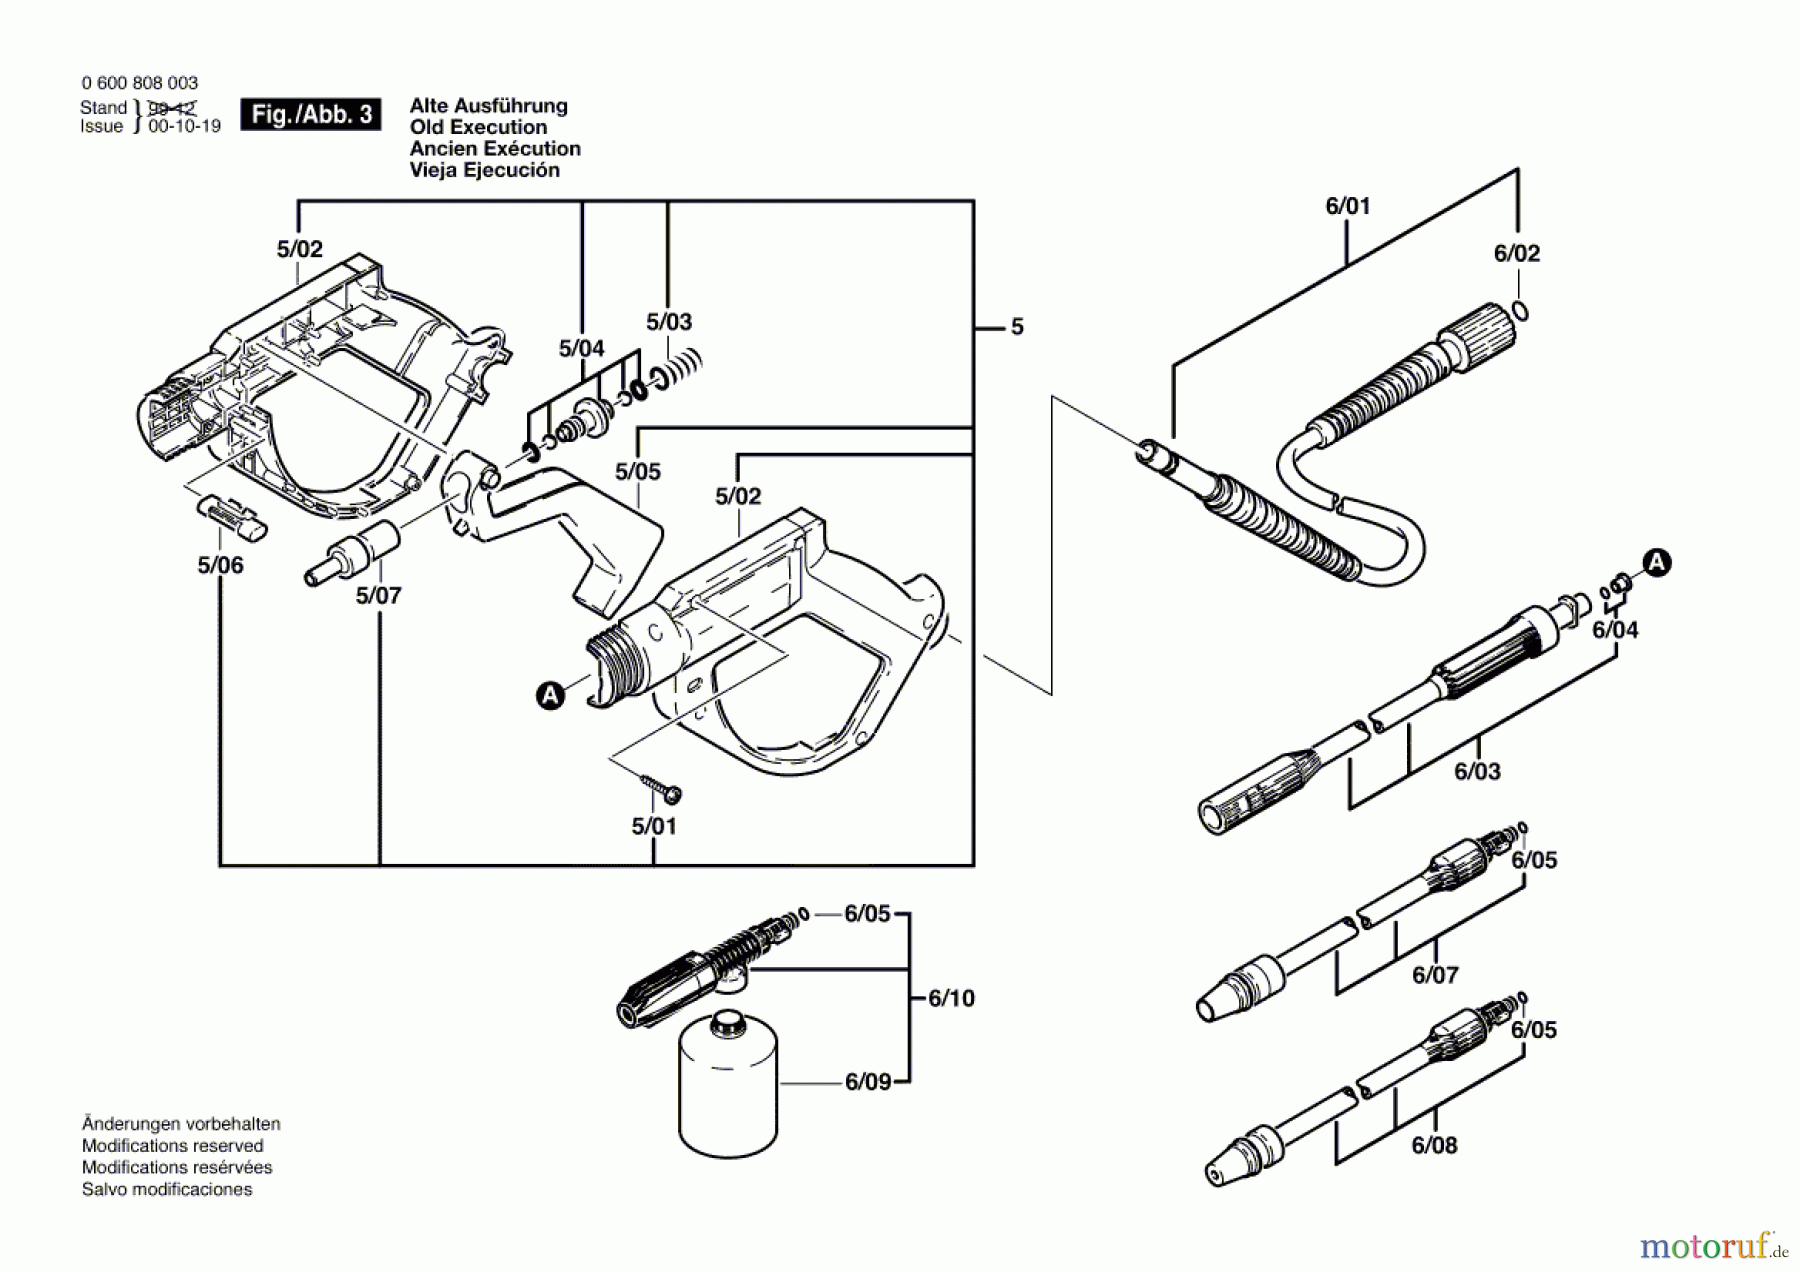  Bosch Wassertechnik Hochdruckreiniger AHR 1200 AS Seite 3